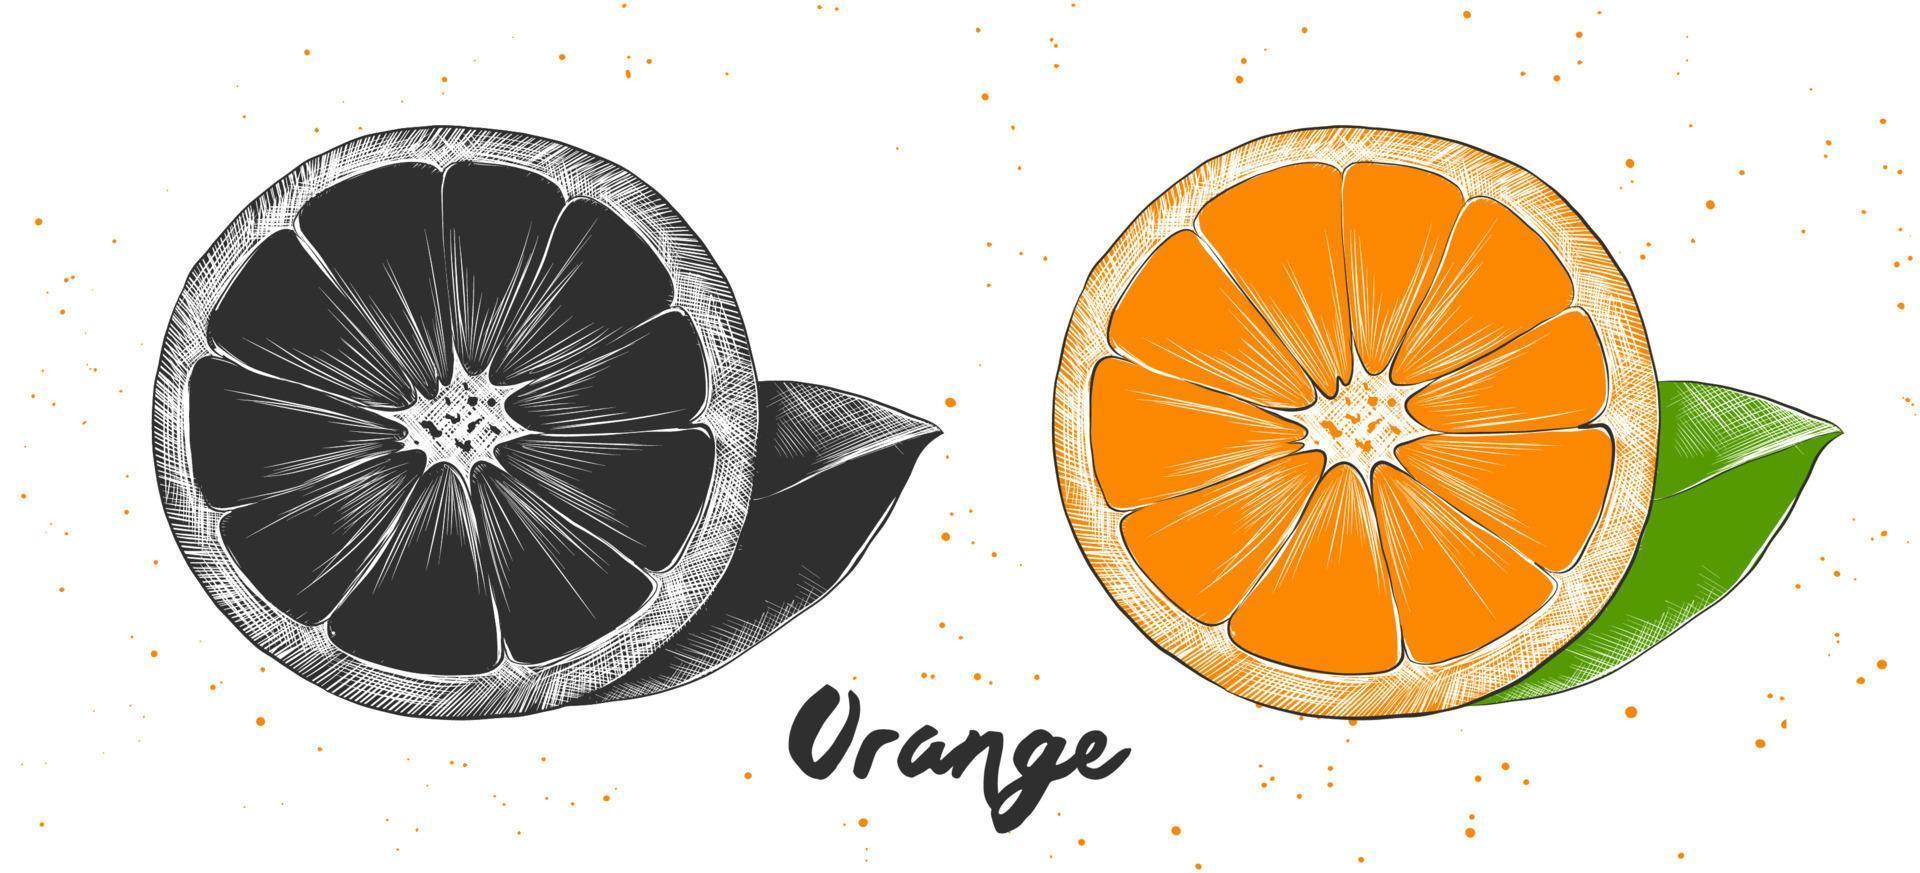 vektor graverat stil illustration för affischer, dekoration och skriva ut. hand dragen skiss av orange i svartvit och färgrik. detaljerad vegetarian mat teckning.